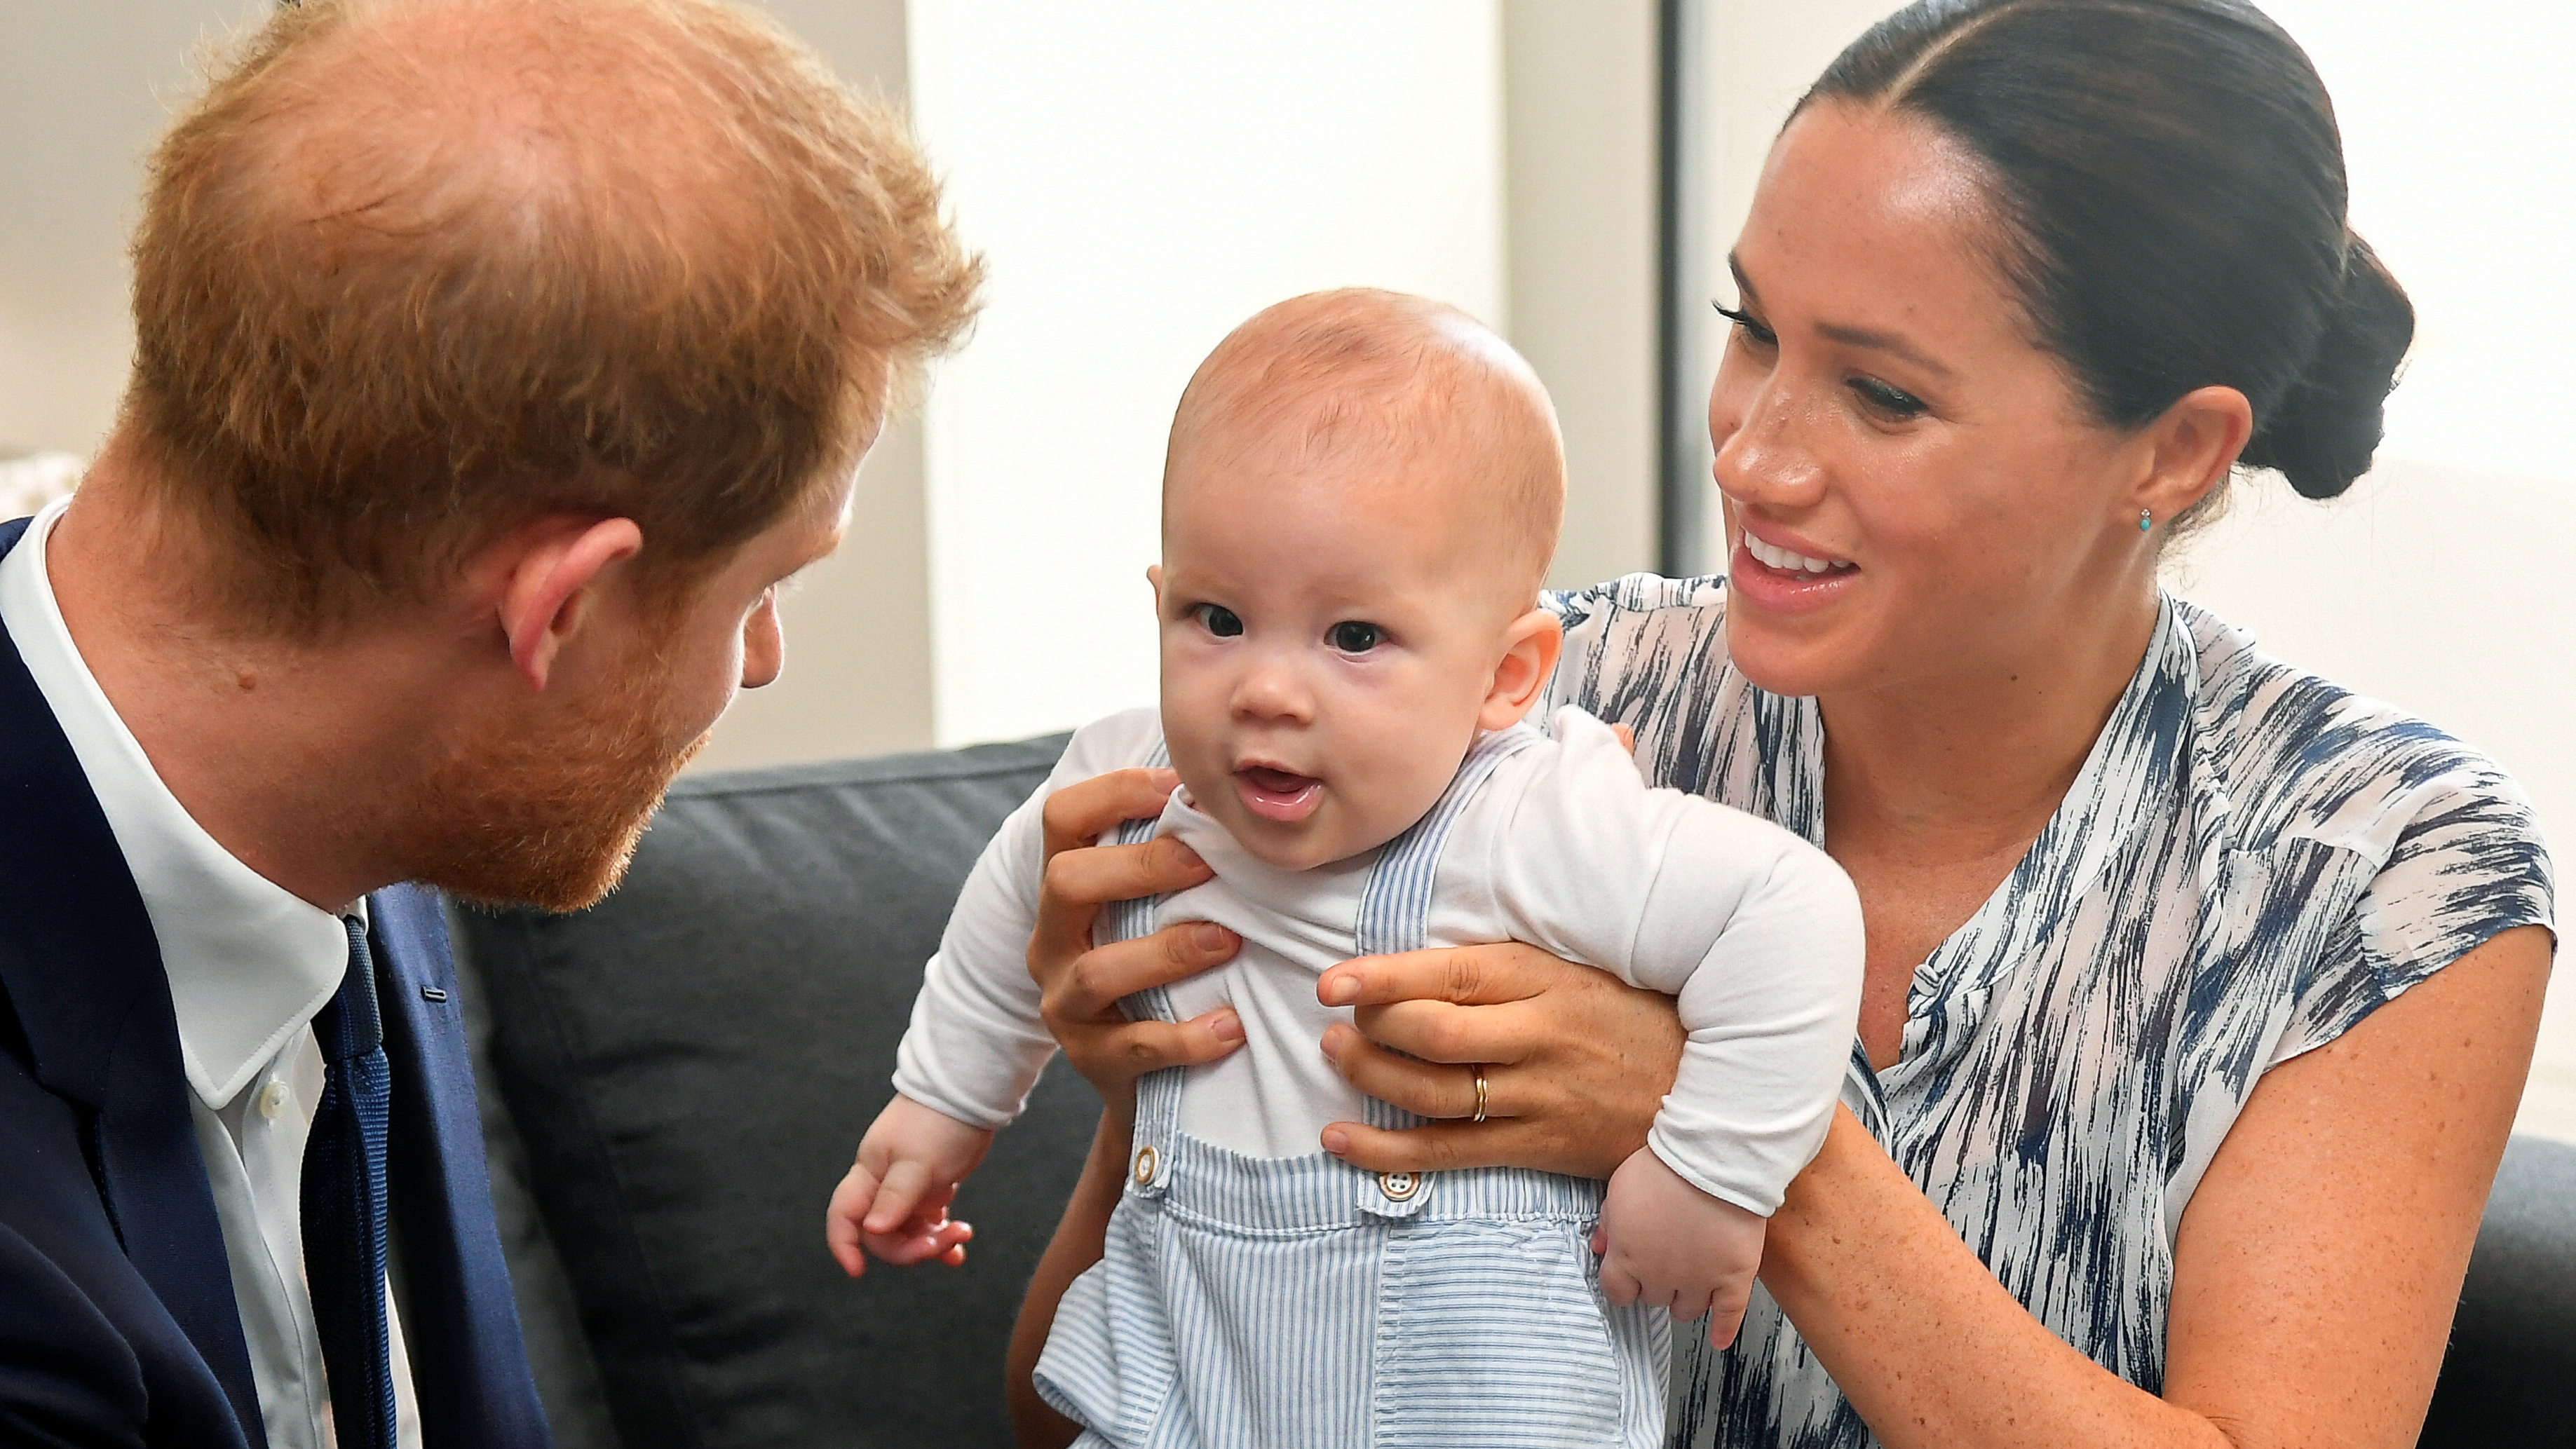 Los duques de Sussex viven en Los Angeles con su hijo Archie, que hoy tiene 14 meses. (REUTERS/Toby Melville)